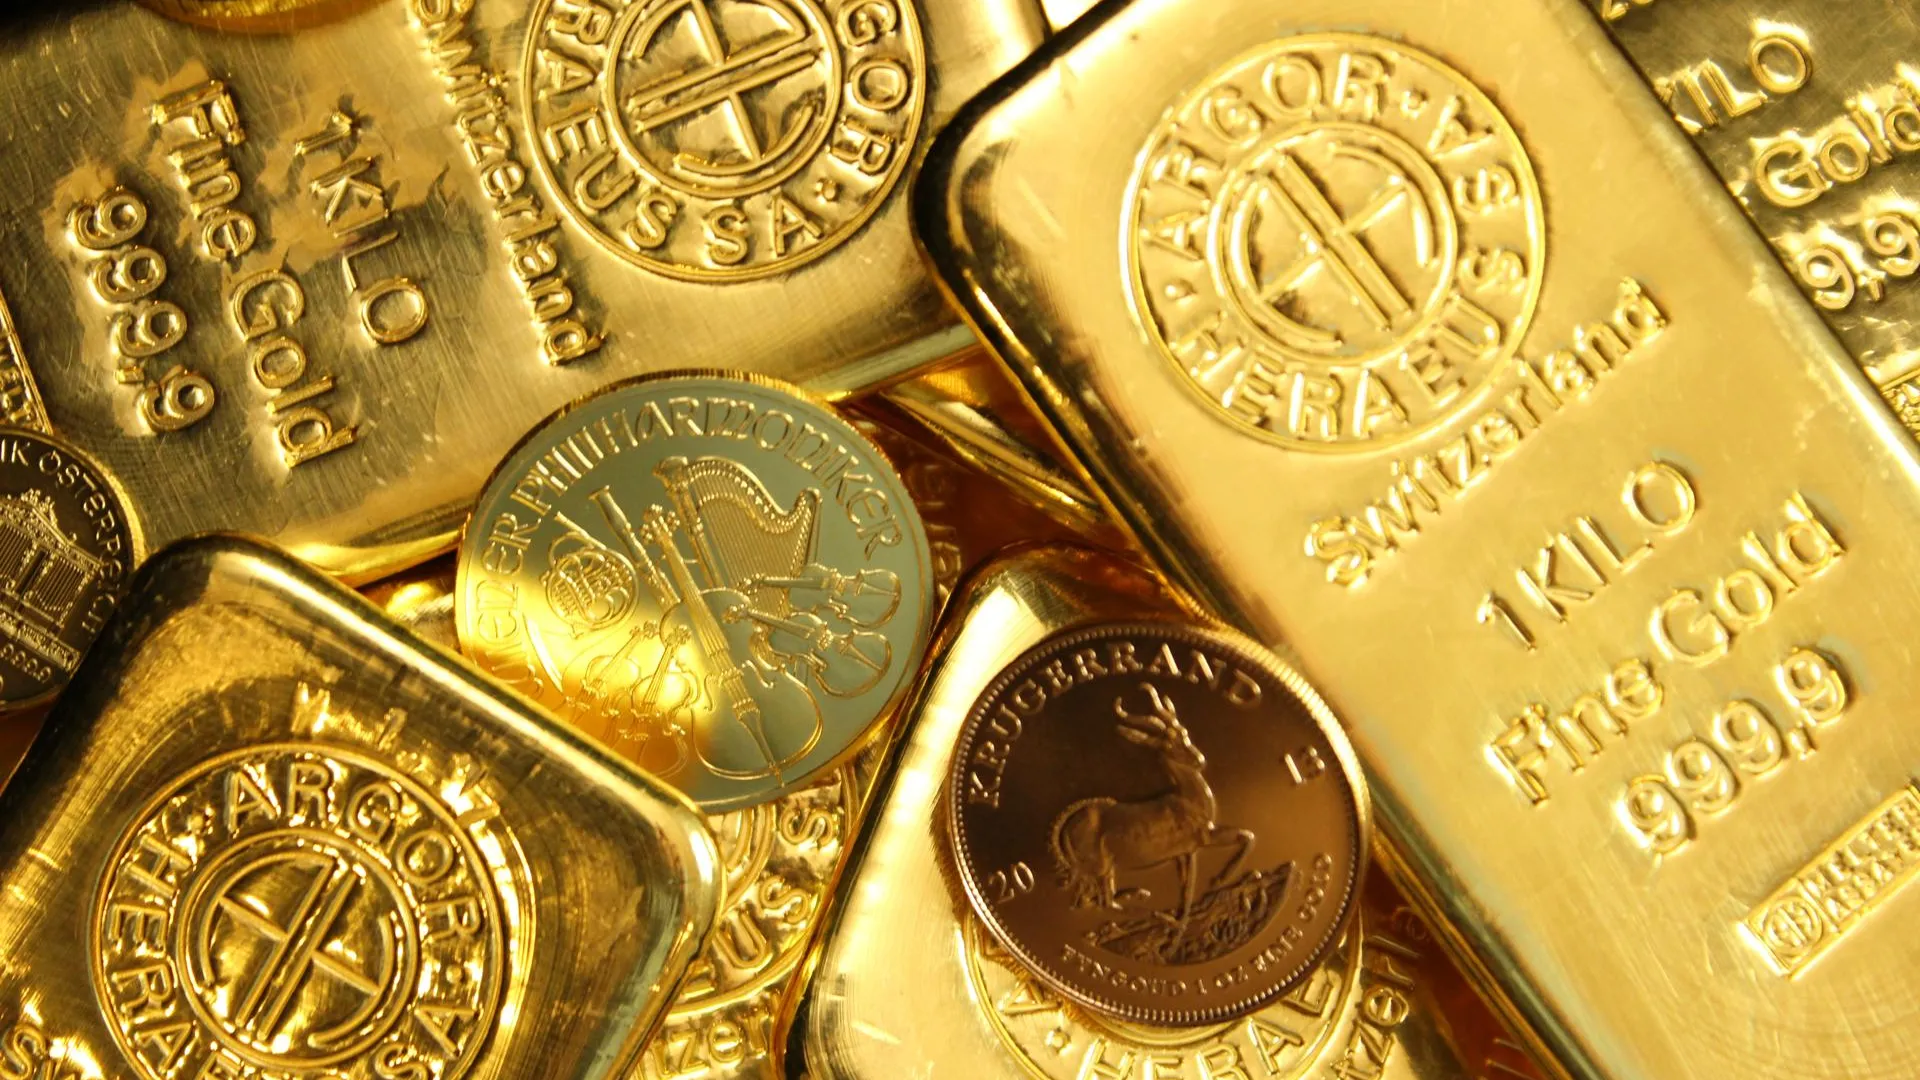 Мировые центробанки в марте увеличили общие запасы золота на 16 тонн